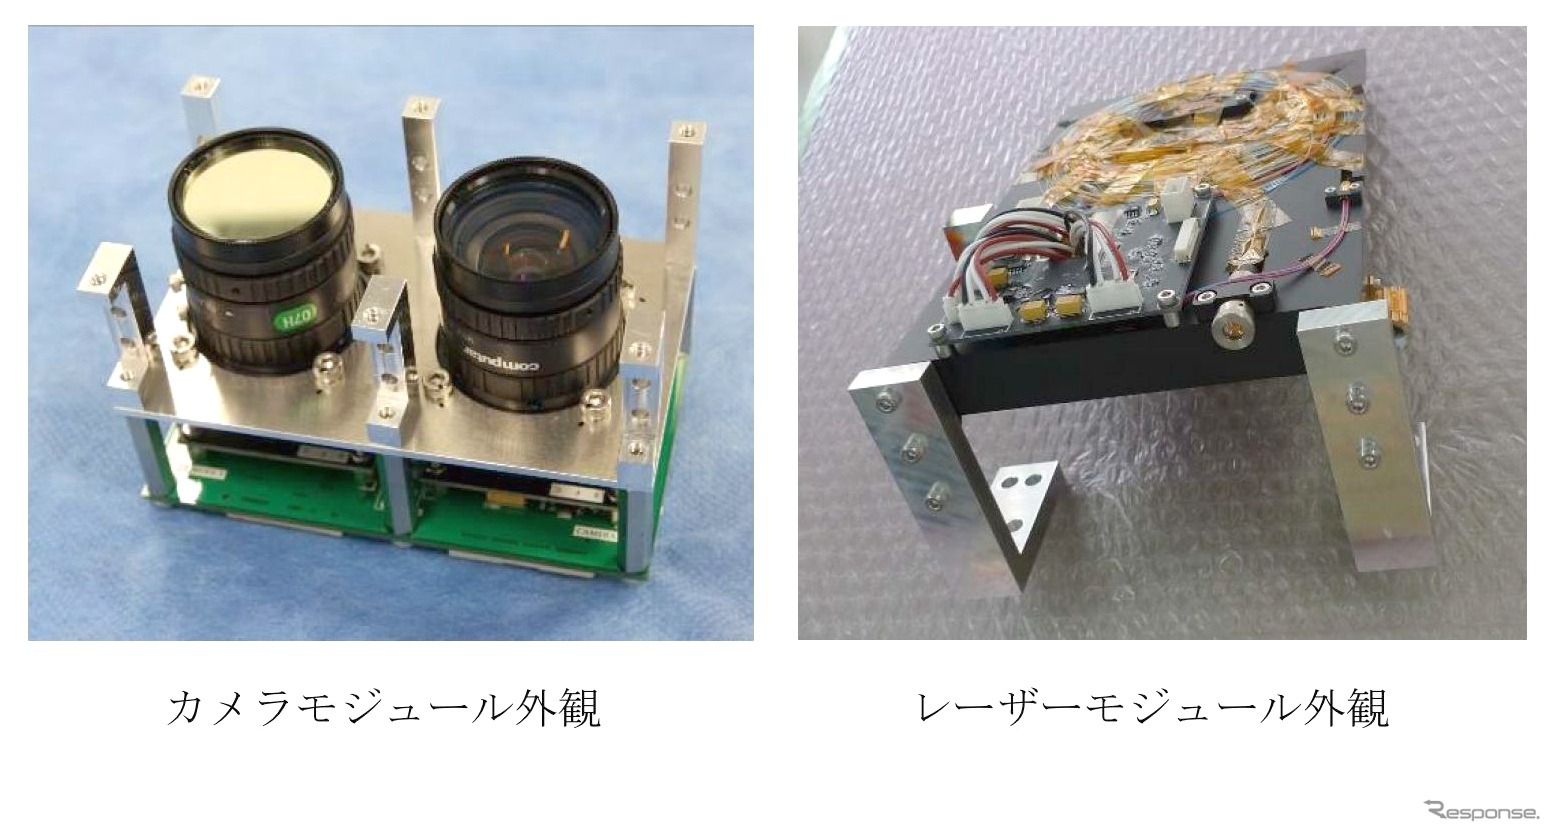 左：カメラモジュールの外観右：レーザーモジュールの外観